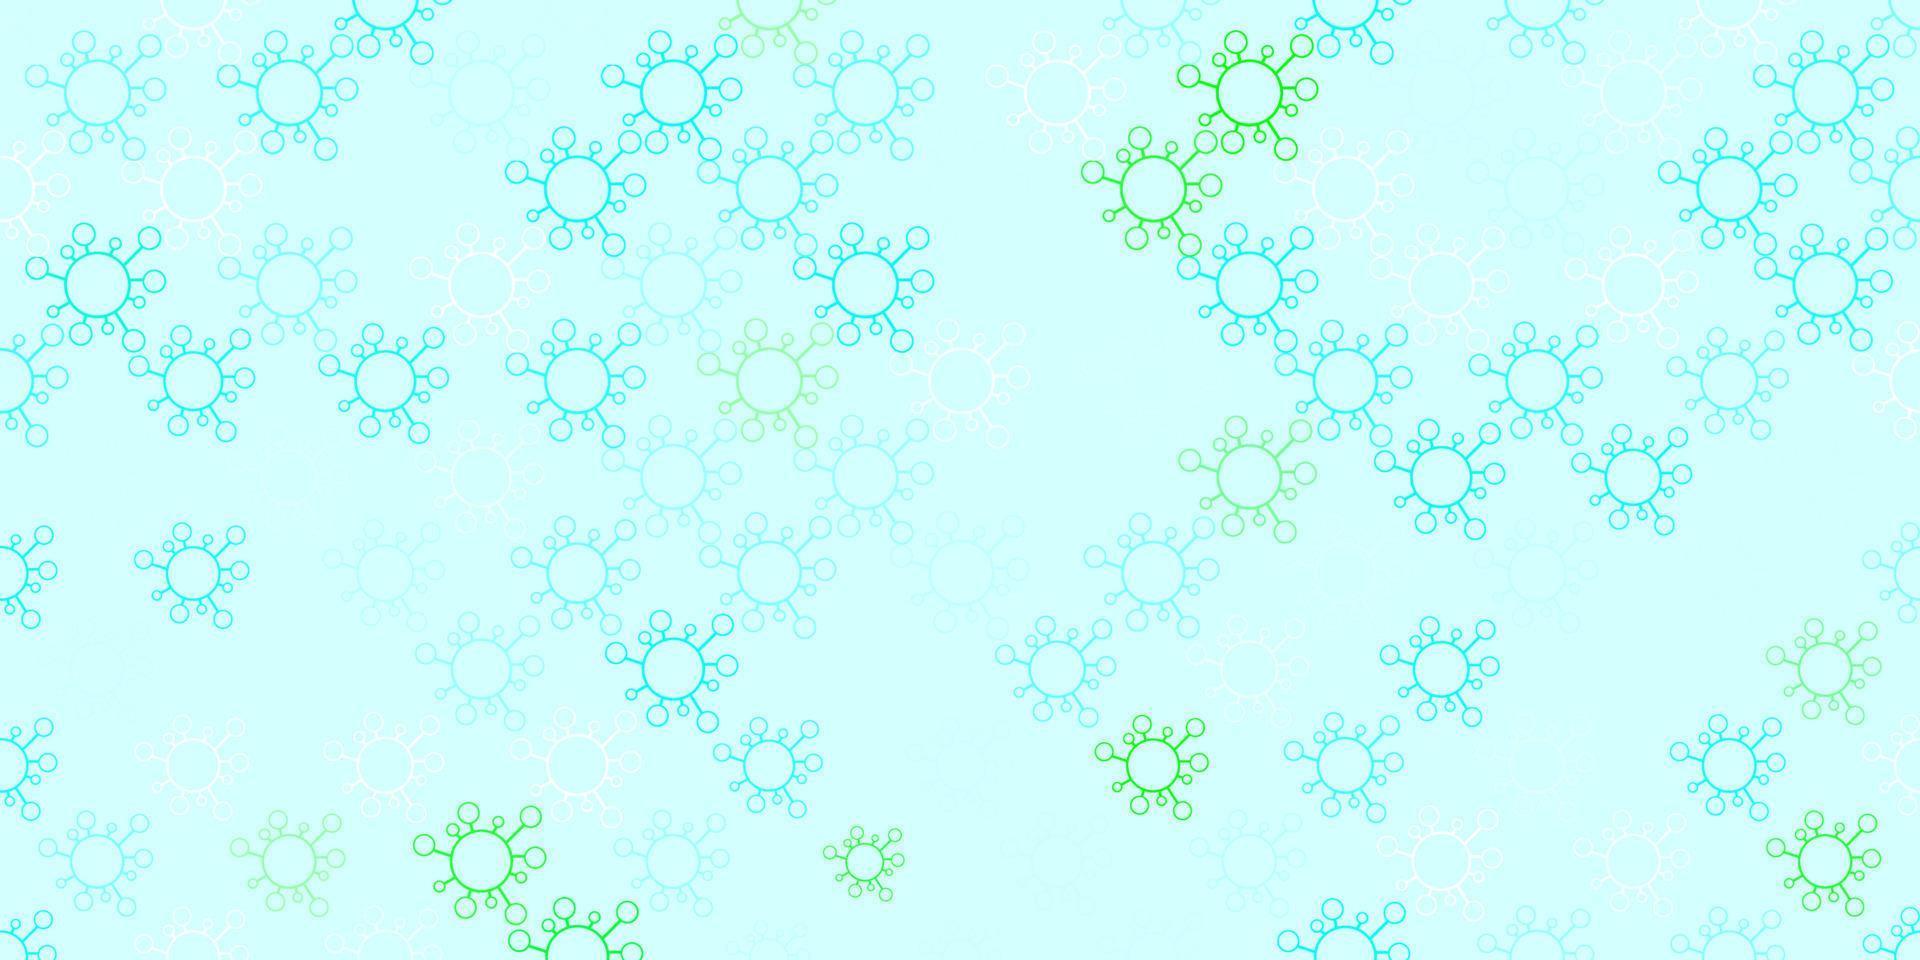 ljusblå, grön vektorbakgrund med virussymboler. vektor